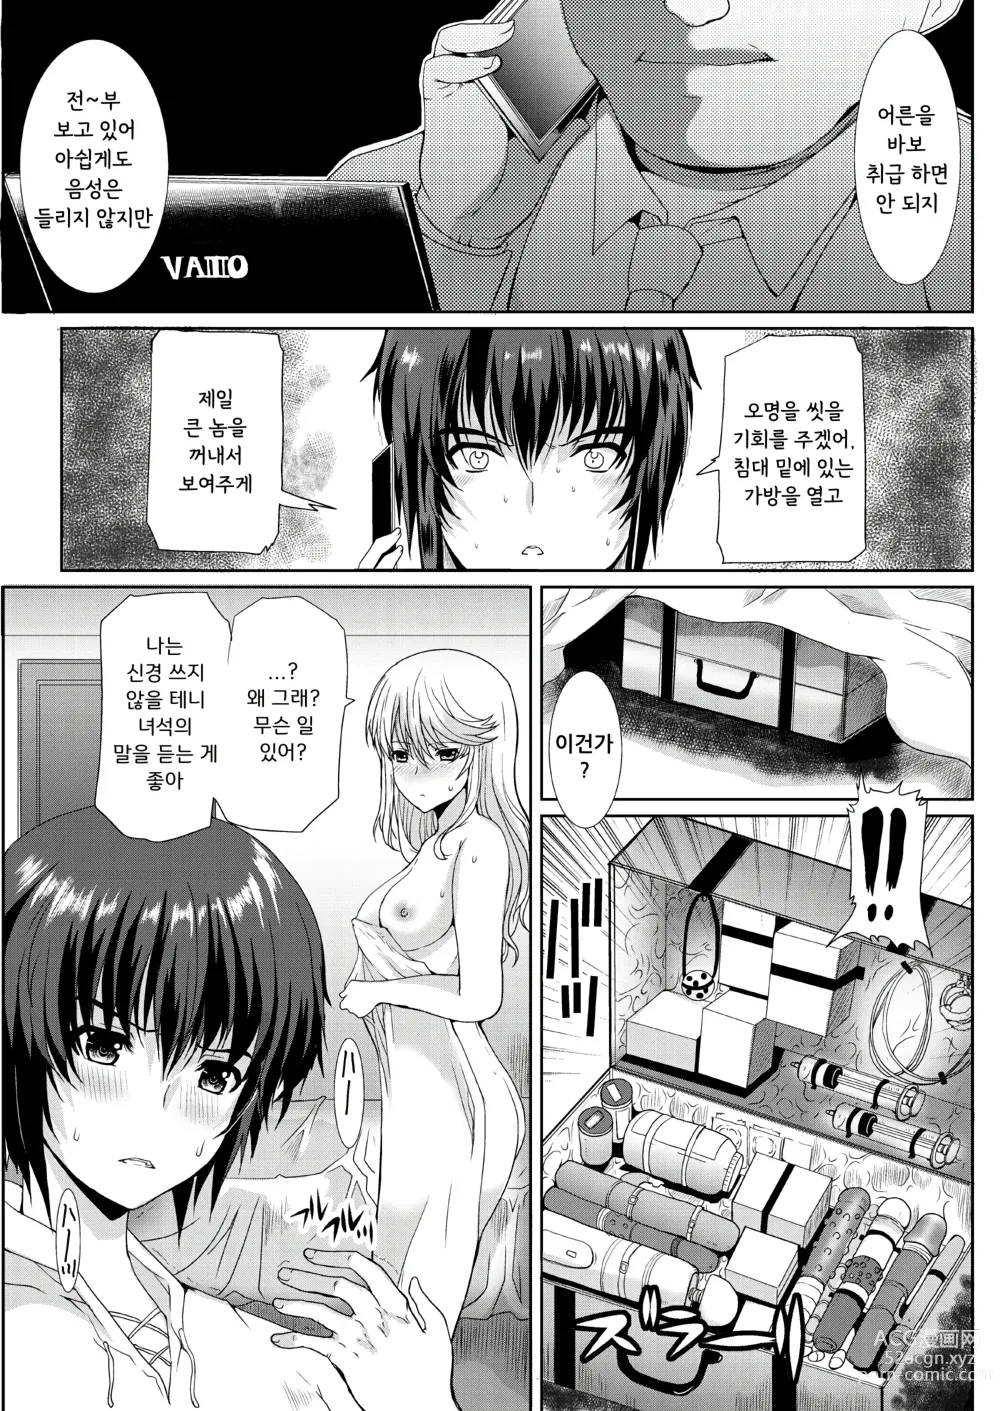 Page 12 of doujinshi 동경하던 그녀(선생님)는 치한전차에서 조교완료 되었습니다 4